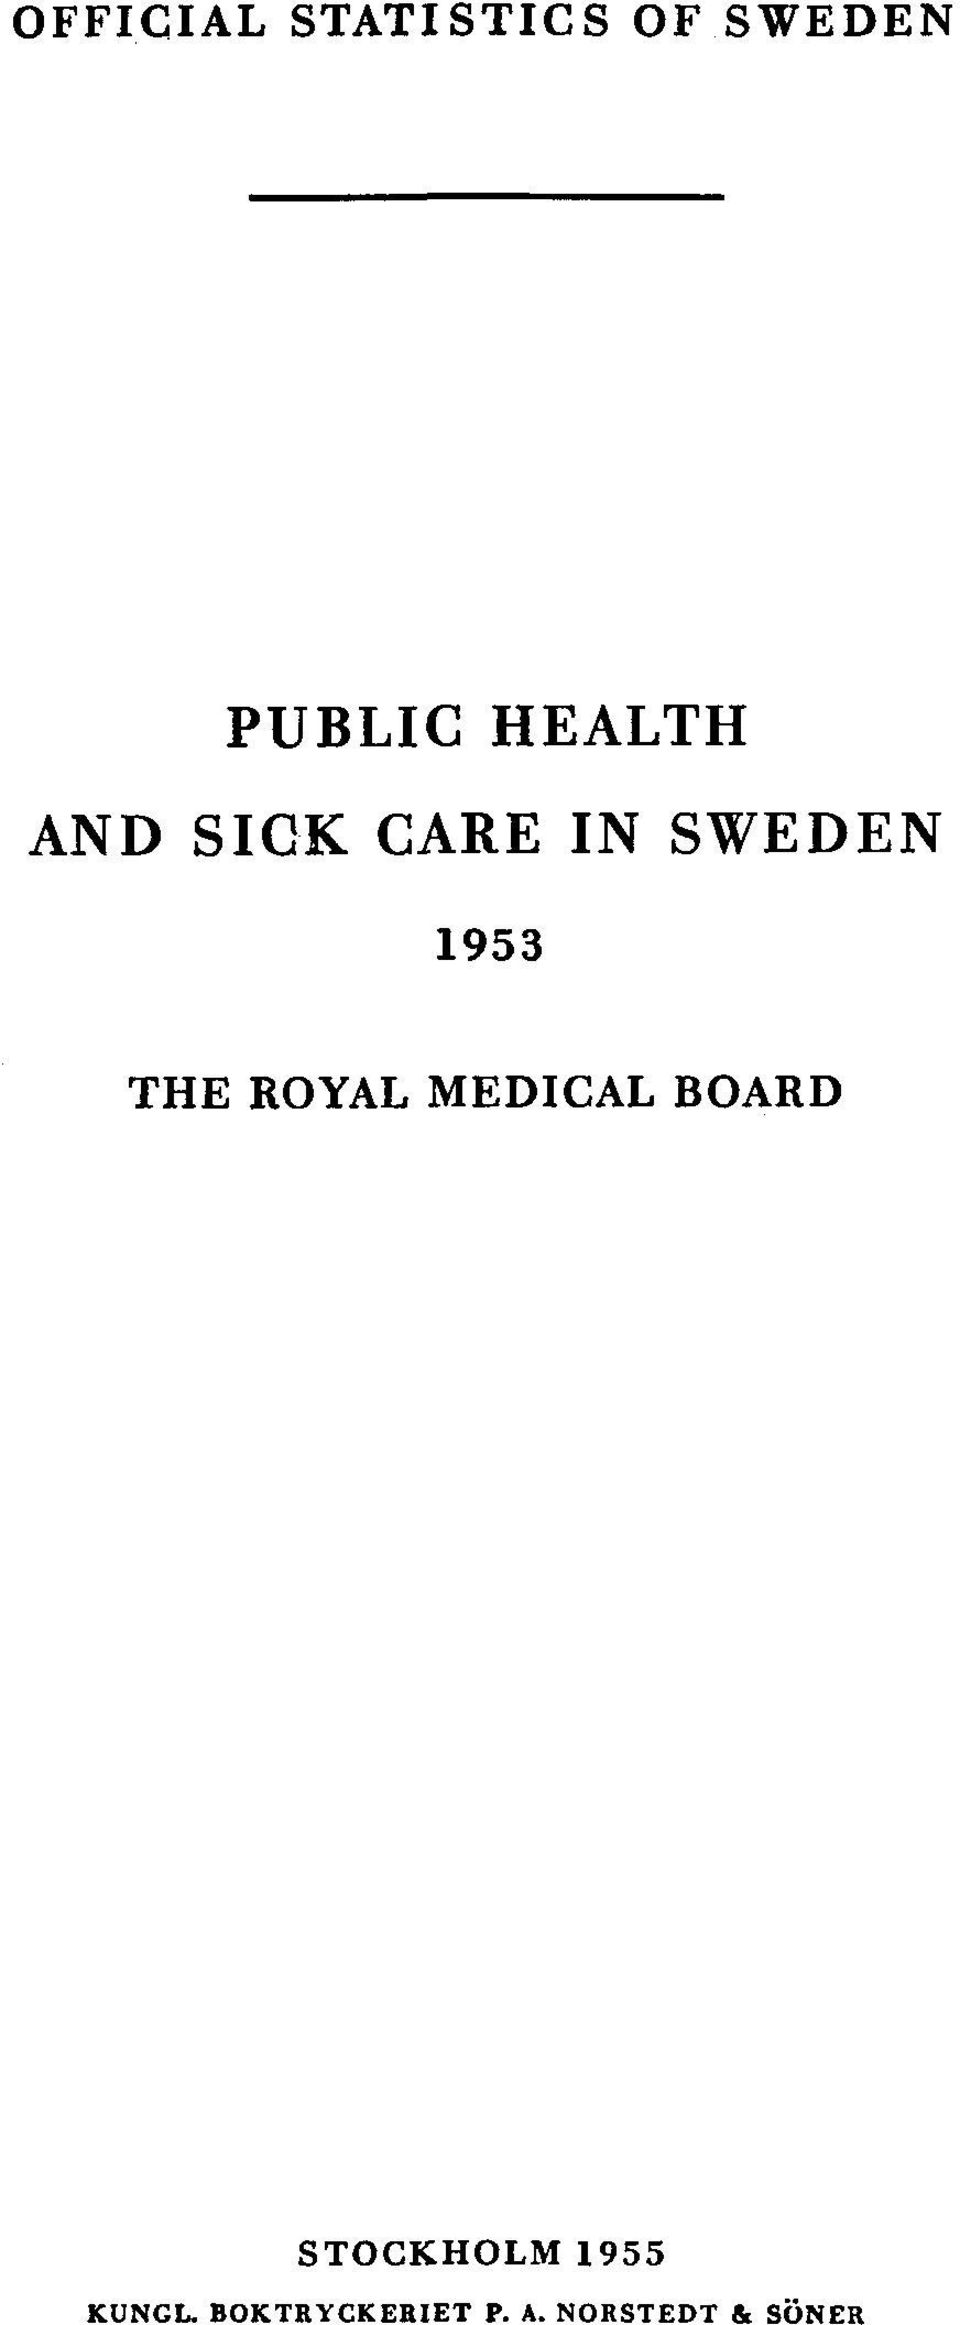 THE ROYAL MEDICAL BOARD STOCKHOLM 1955